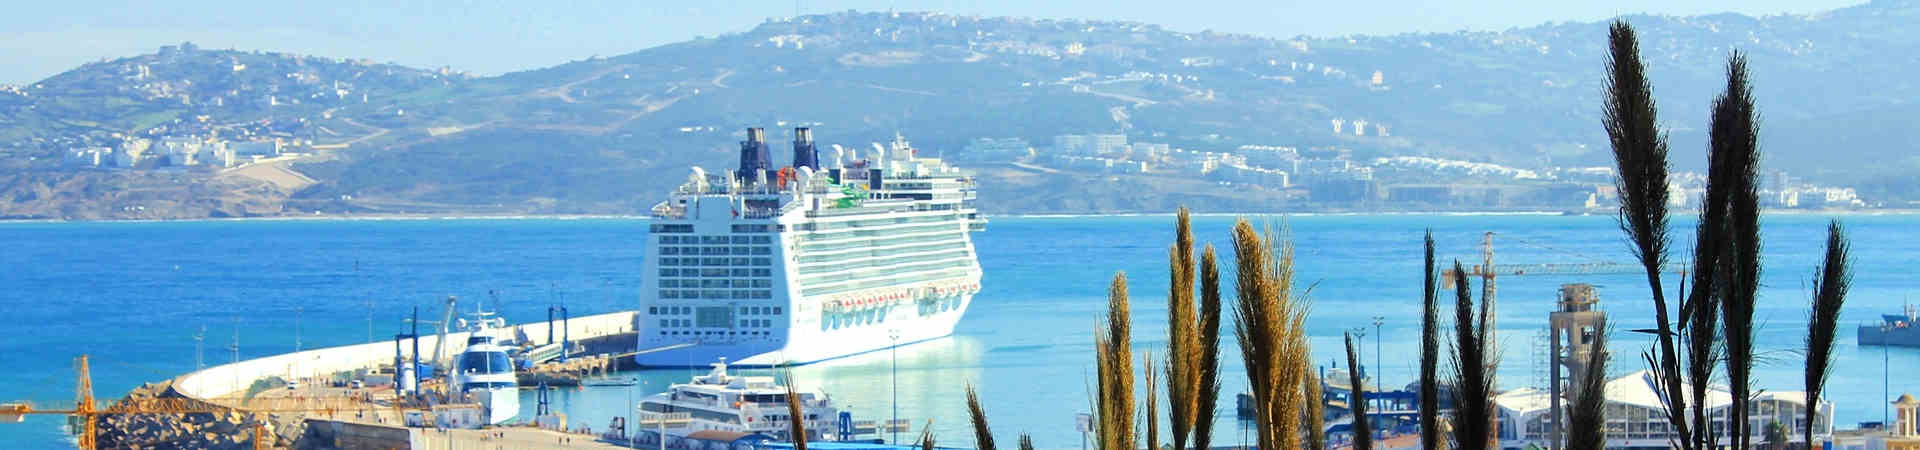 Immagine del porto di arrivo Tangeri Med per la rotta traghetto Sete - Tangeri Med